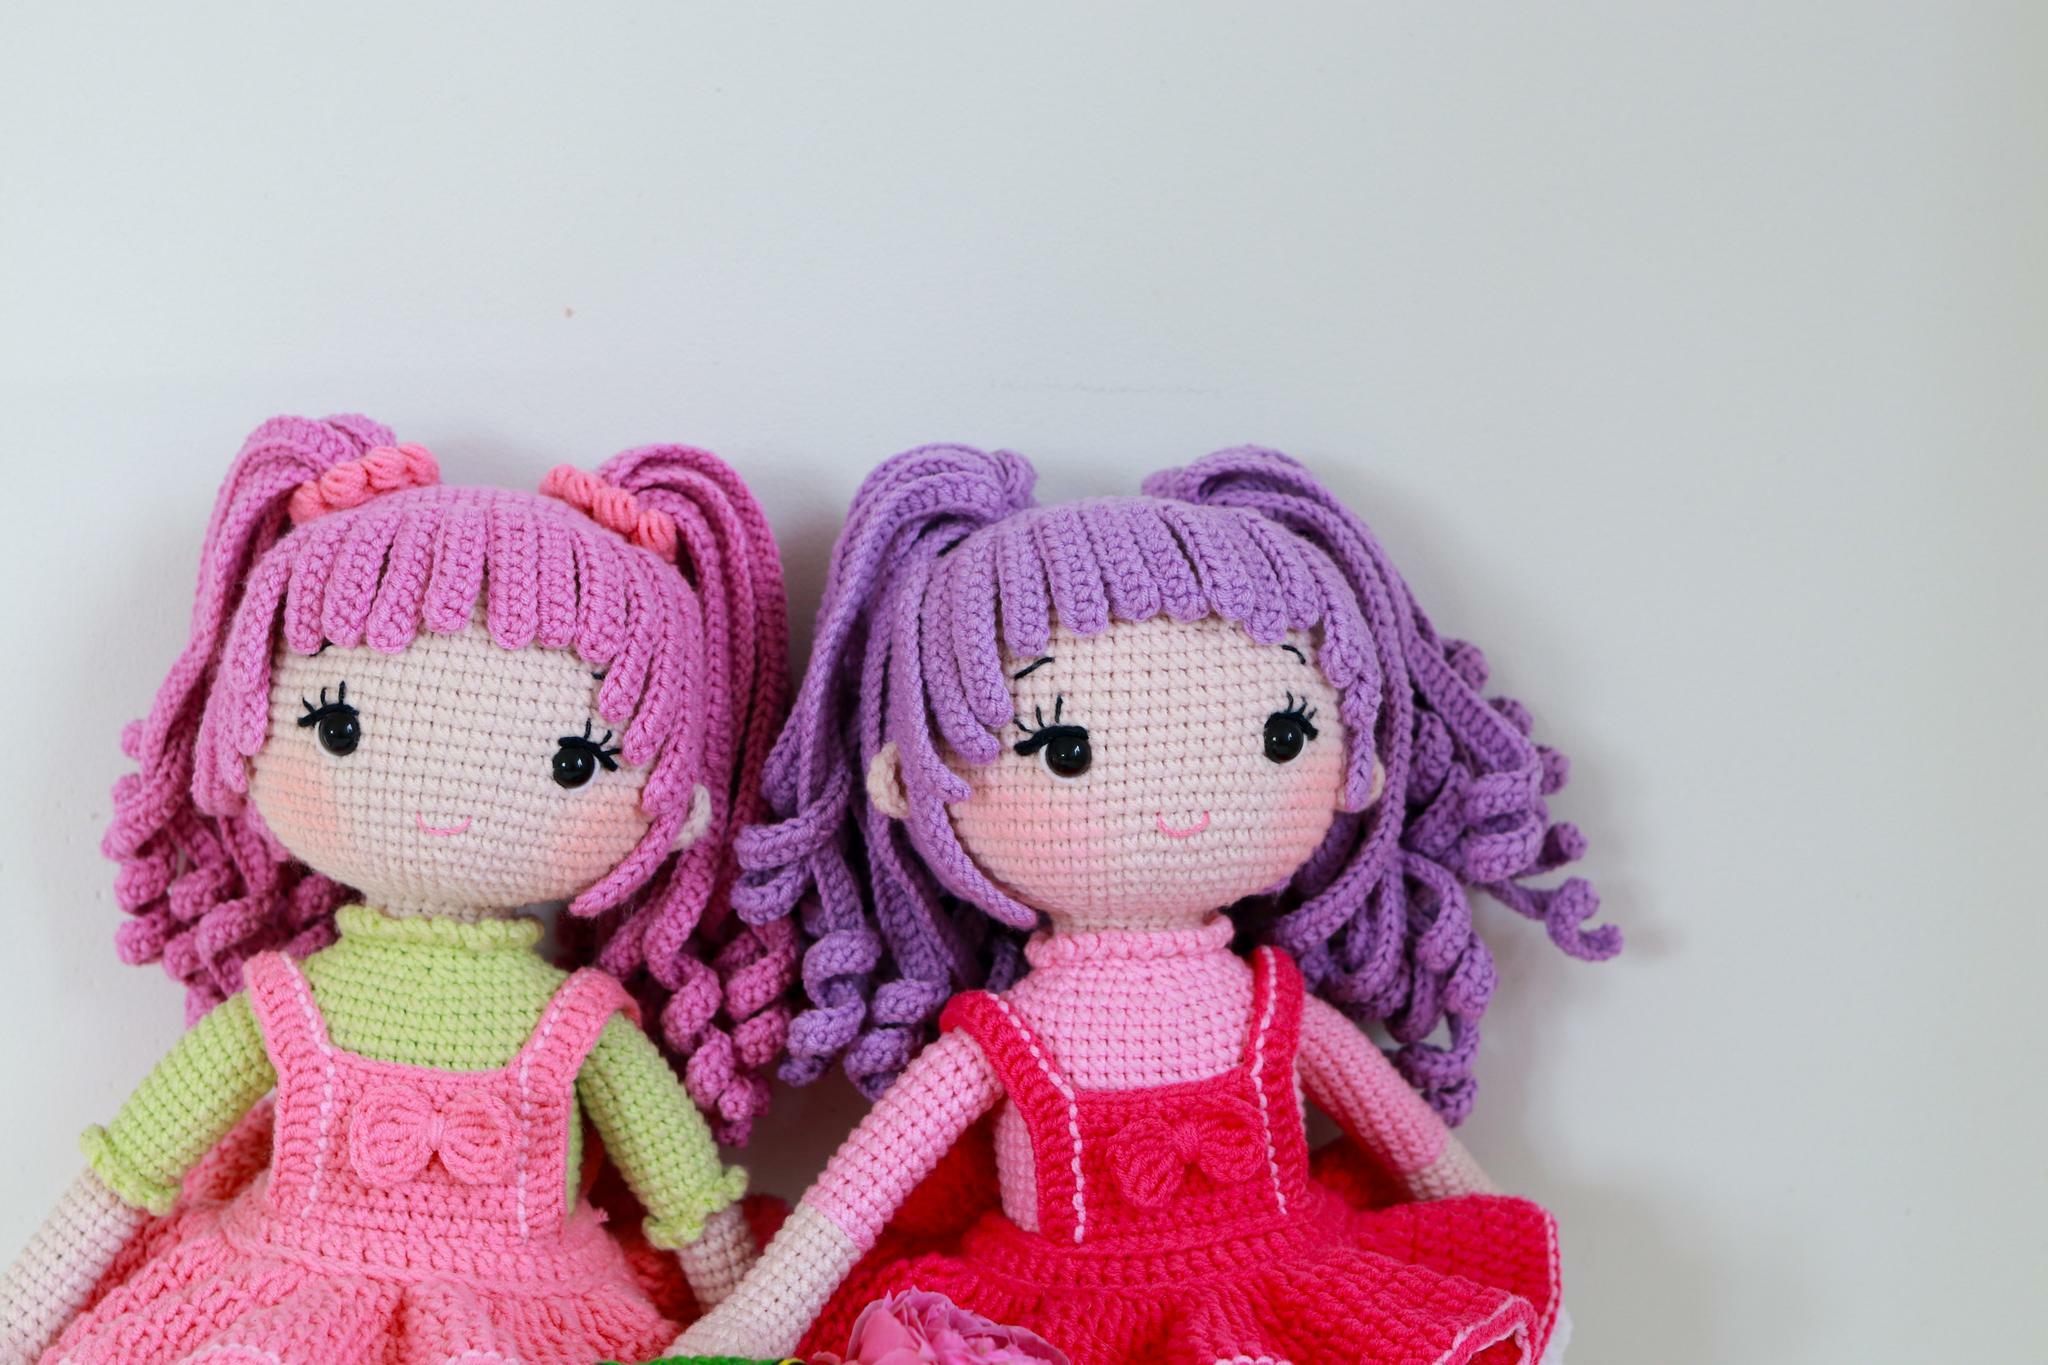 Вязание кукол крючком — простые схемы и мастер-классы для начинающих по вязанию кукол и одежды